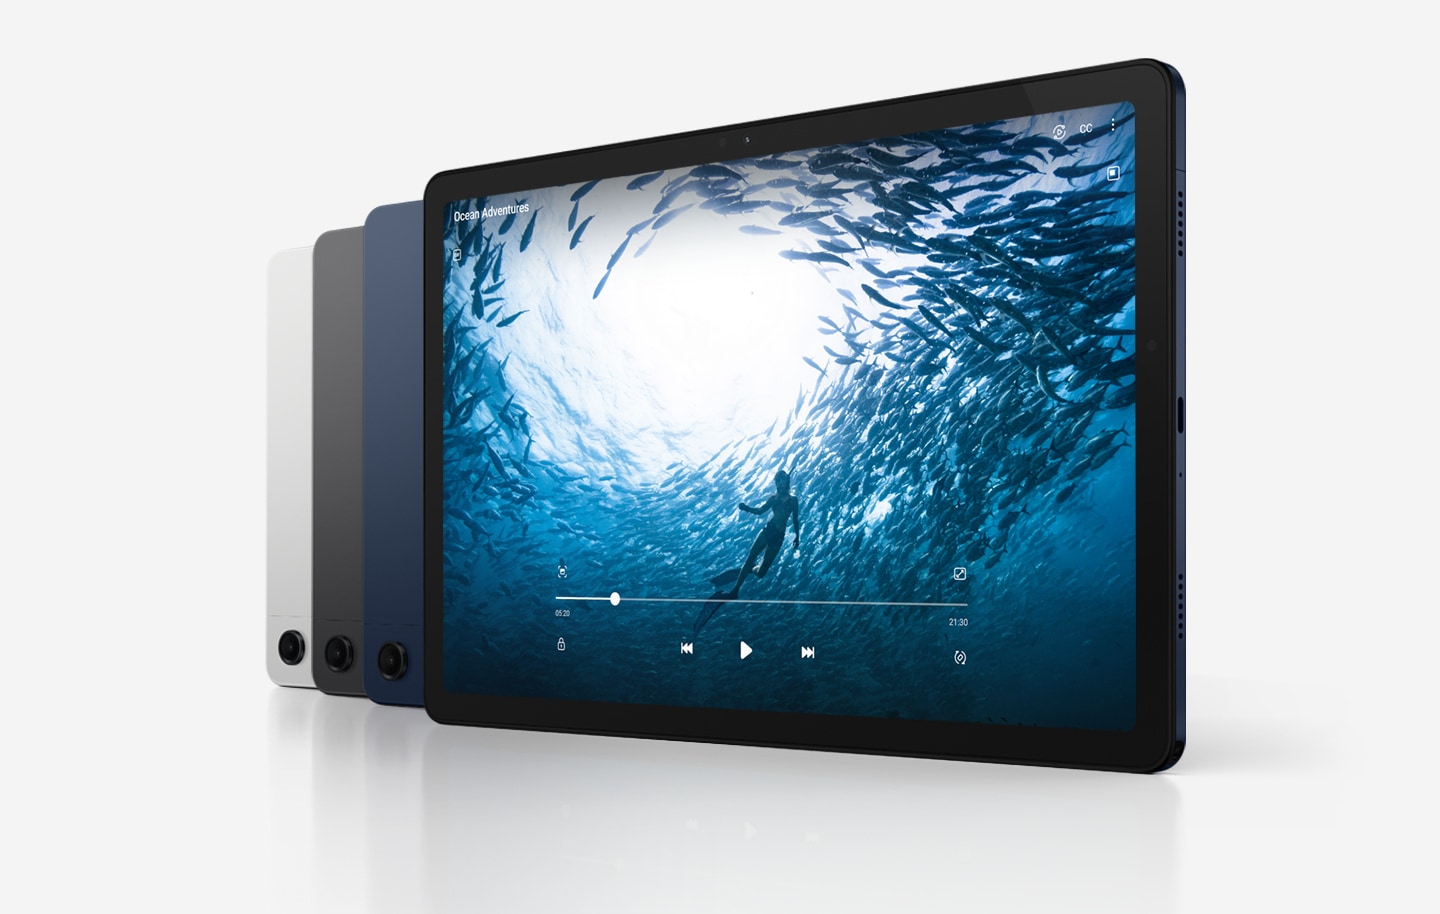 Cuatro dispositivos Galaxy Tab A9+ están en línea diagonal. Tres dispositivos tienen la parte posterior hacia el frente y el que está en el extremo derecho muestra la pantalla. De izquierda a derecha, el color de los dispositivos es Silver y Graphite, y el resto, Navy. El dispositivo del extremo derecho tiene un video titulado “Ocean Adventures” en pantalla, con una persona nadando en el océano rodeada de peces.